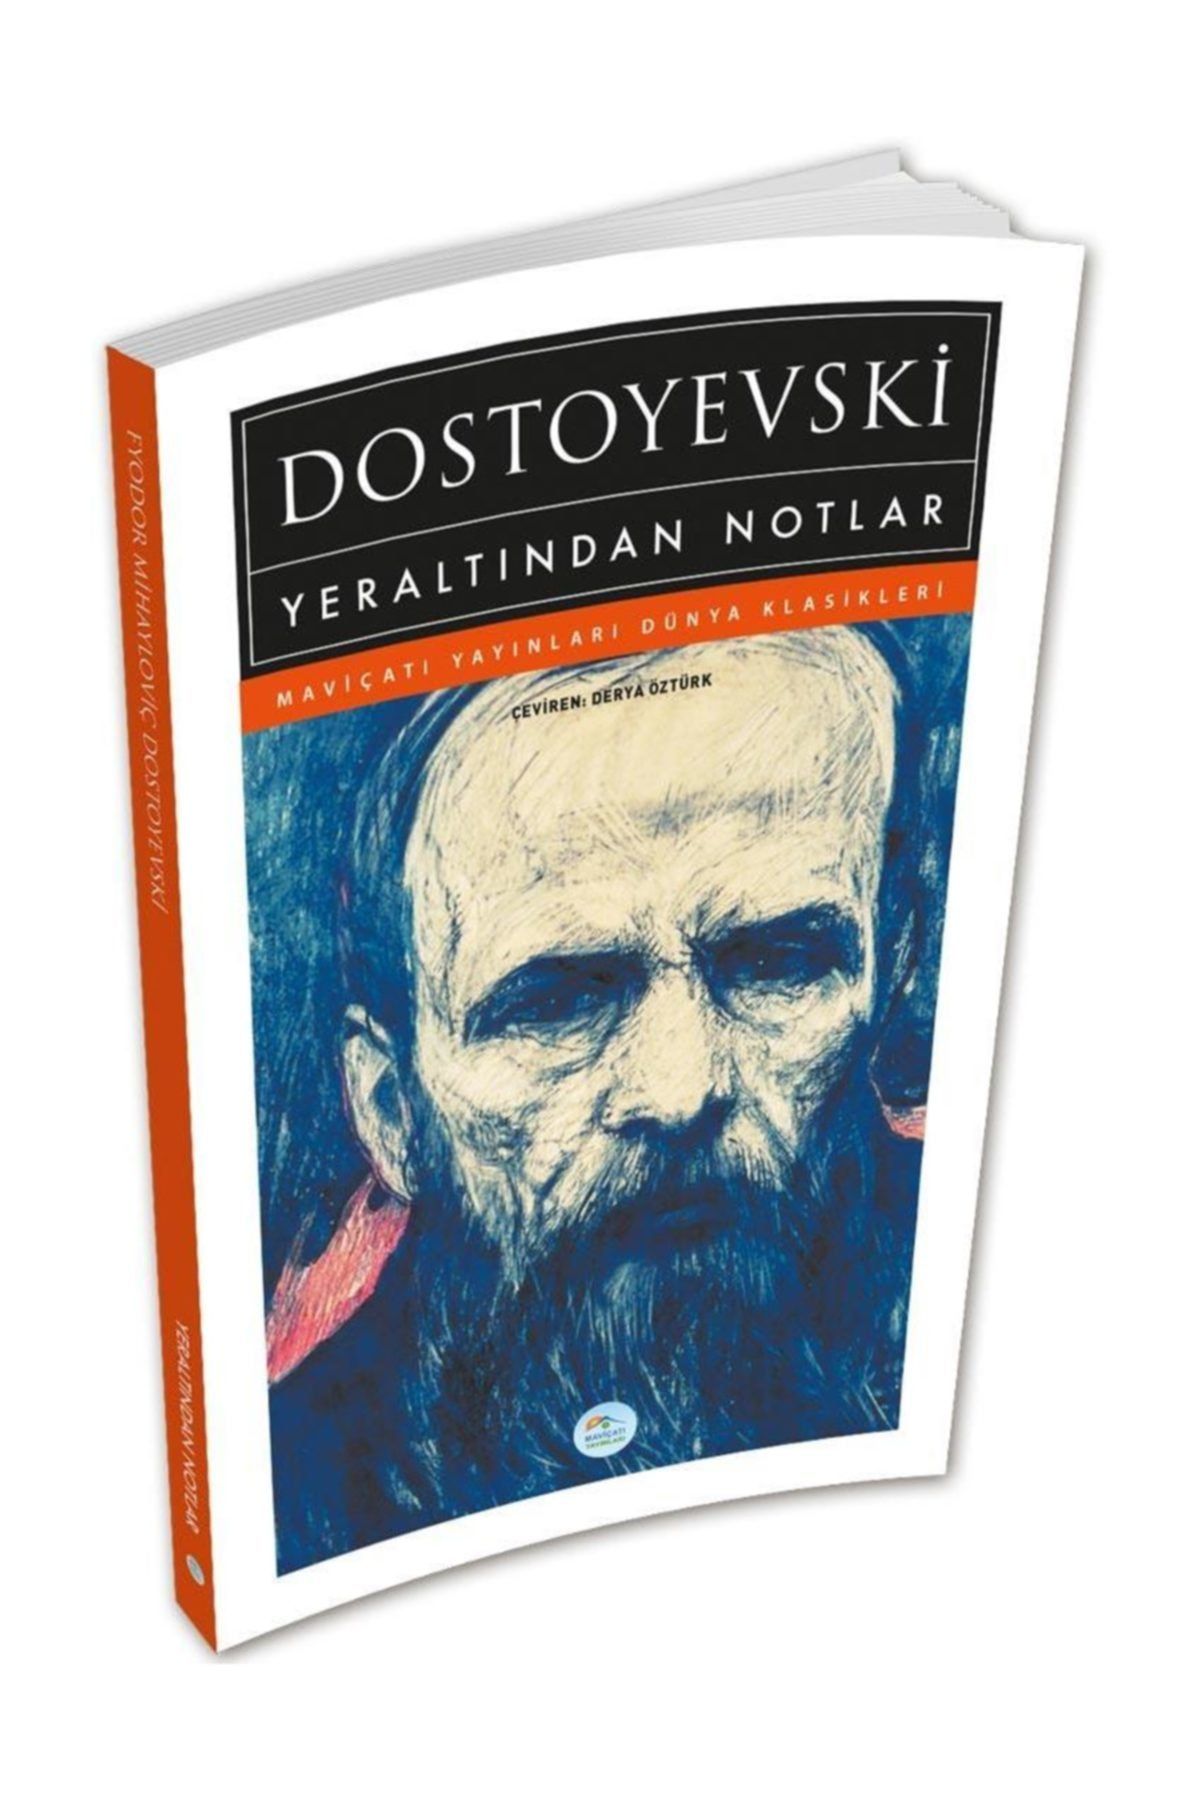 Mavi Çatı Yayınları Yeraltından Notlar - Dostoyevski - Maviçatı (Dünya Klasikleri)